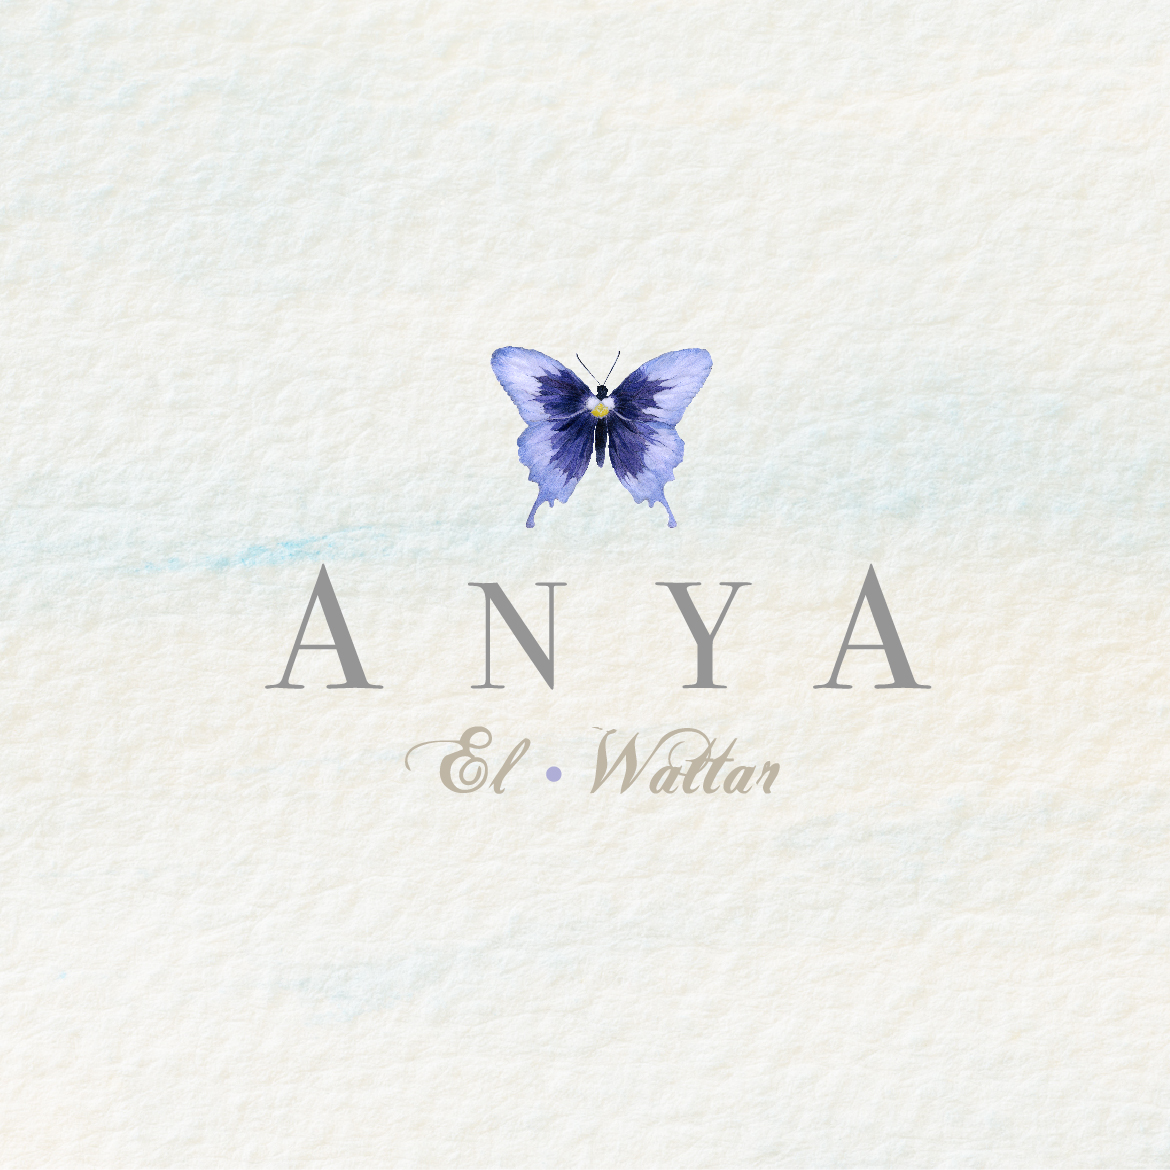 AnyaBox-01.jpg